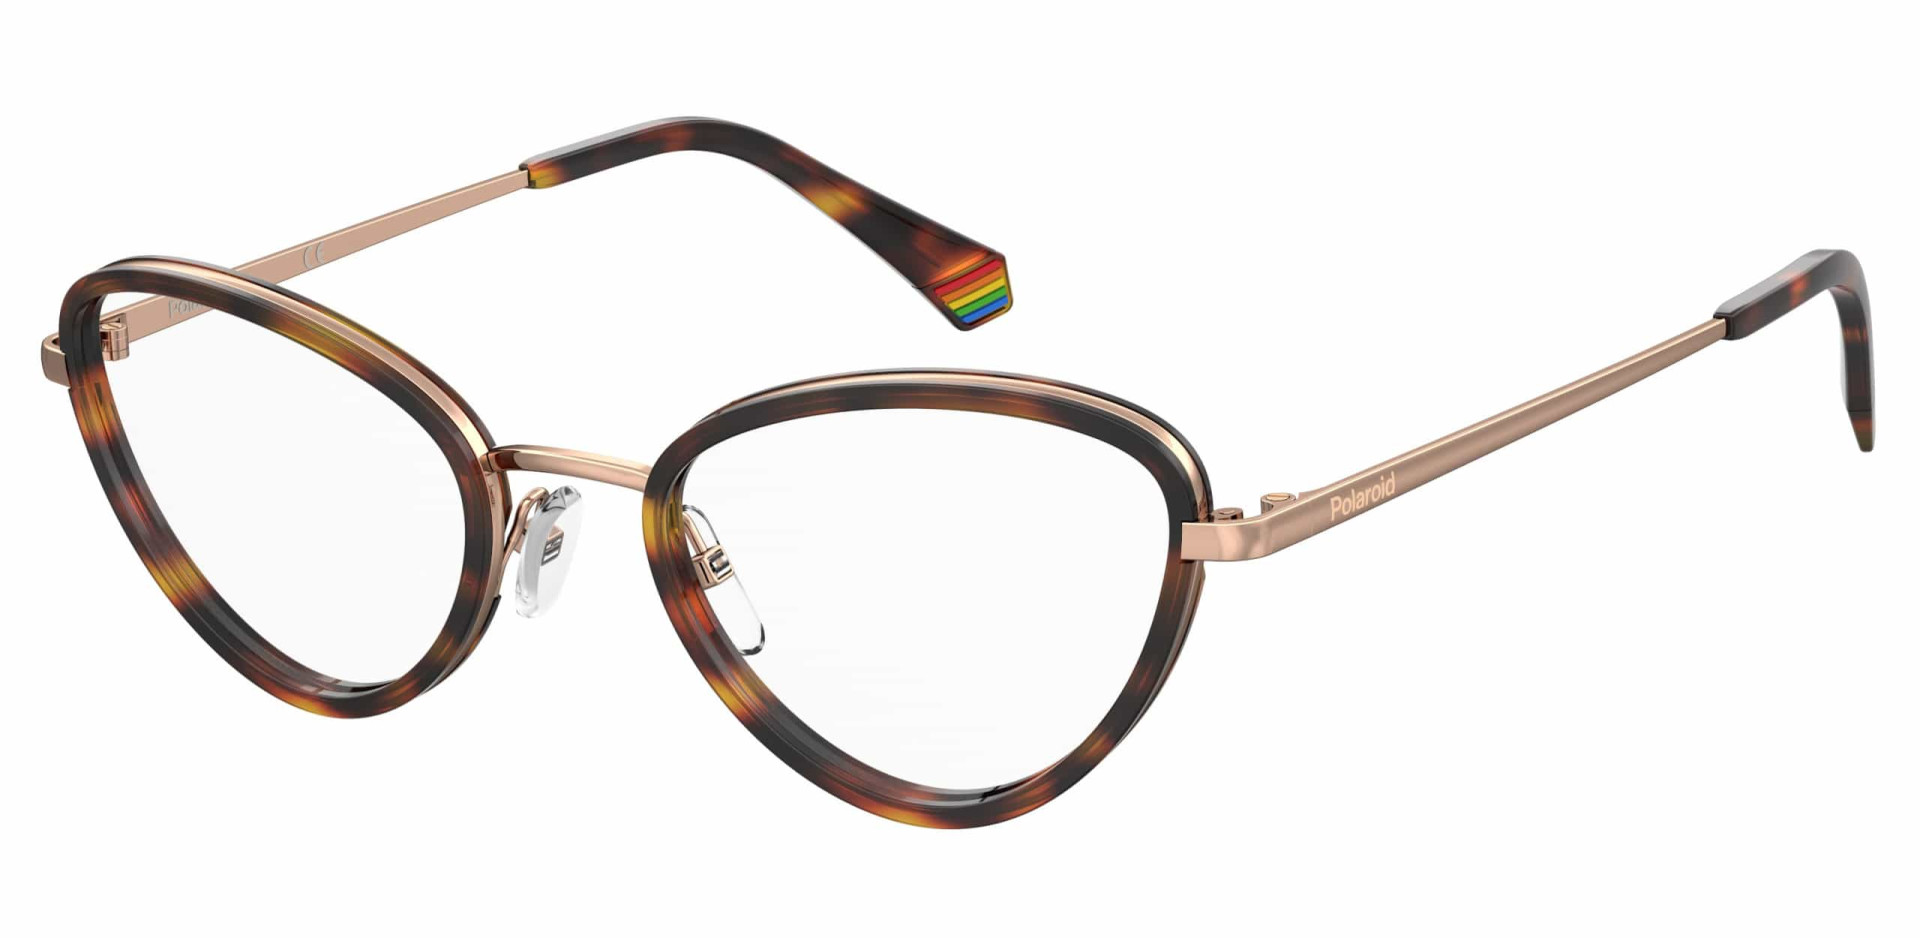 Fique a conhecer a coleção de óculos sustentáveis da Polaroid